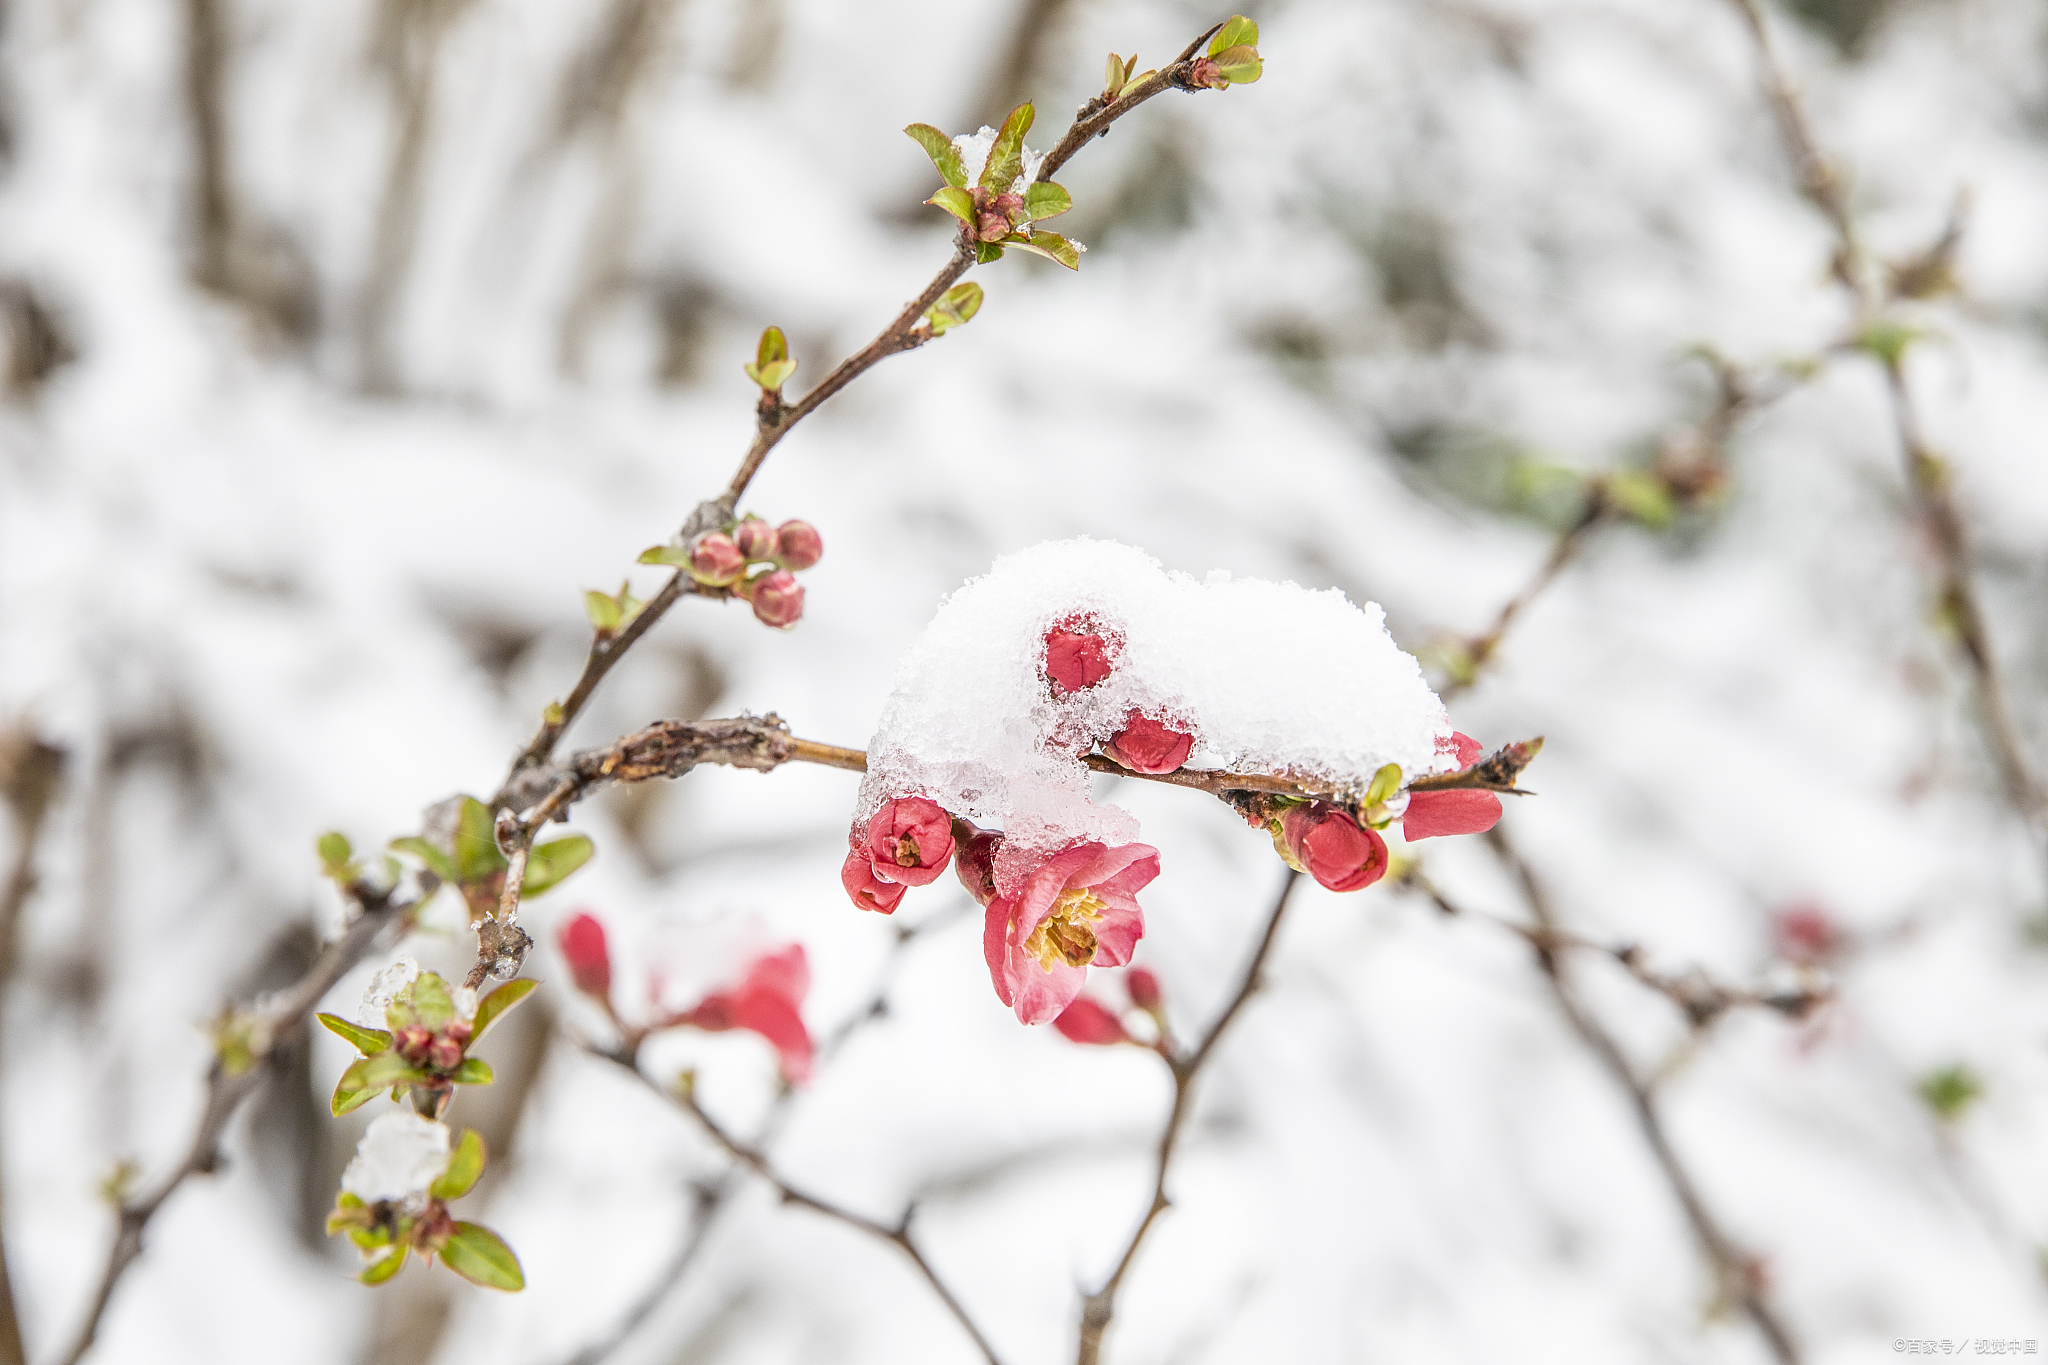 梅花香自苦寒来,这小小的花朵在冰天雪地里绽放,仿佛是大自然给我们